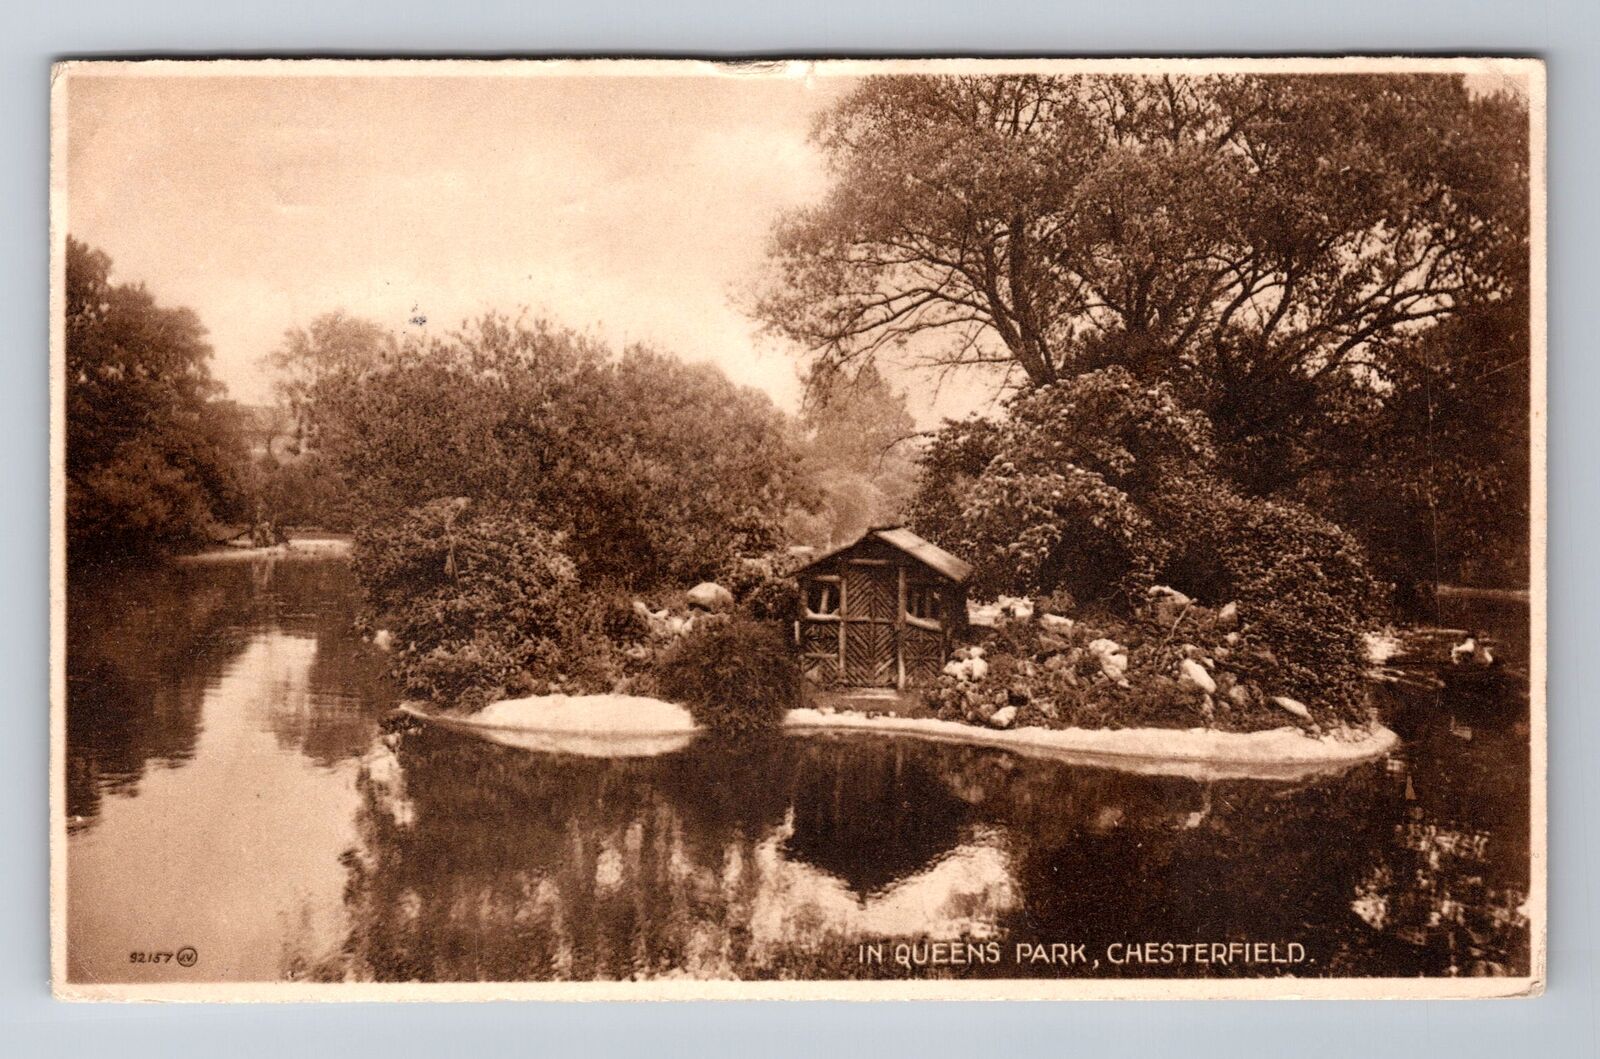 Chesterfield-England, Queens Park, Antique Vintage Souvenir Postcard